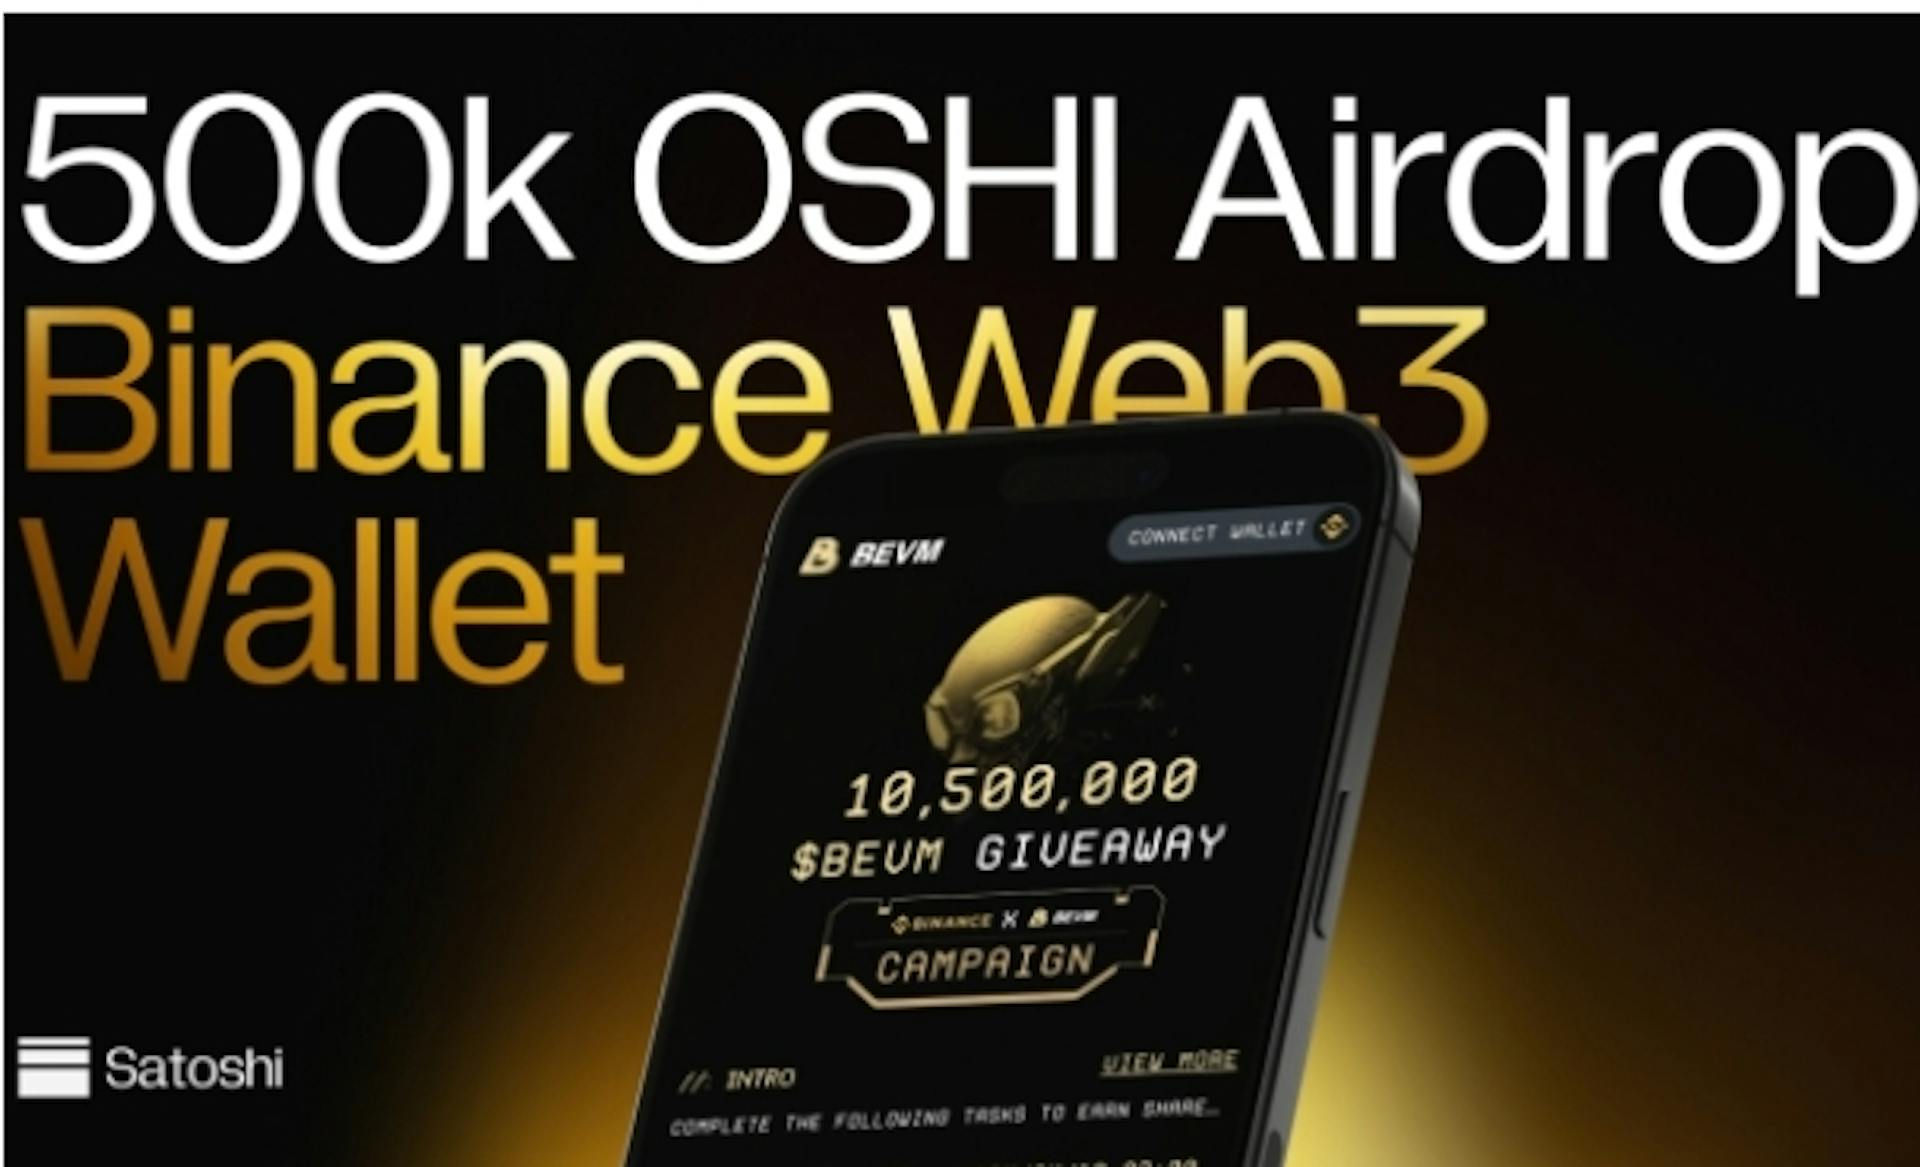 featured image - Satoshi Protocol: Erster CDP auf Bitcoin Layer2, 500.000 OSHI Airdrop mit Binance Wallet und BEVM